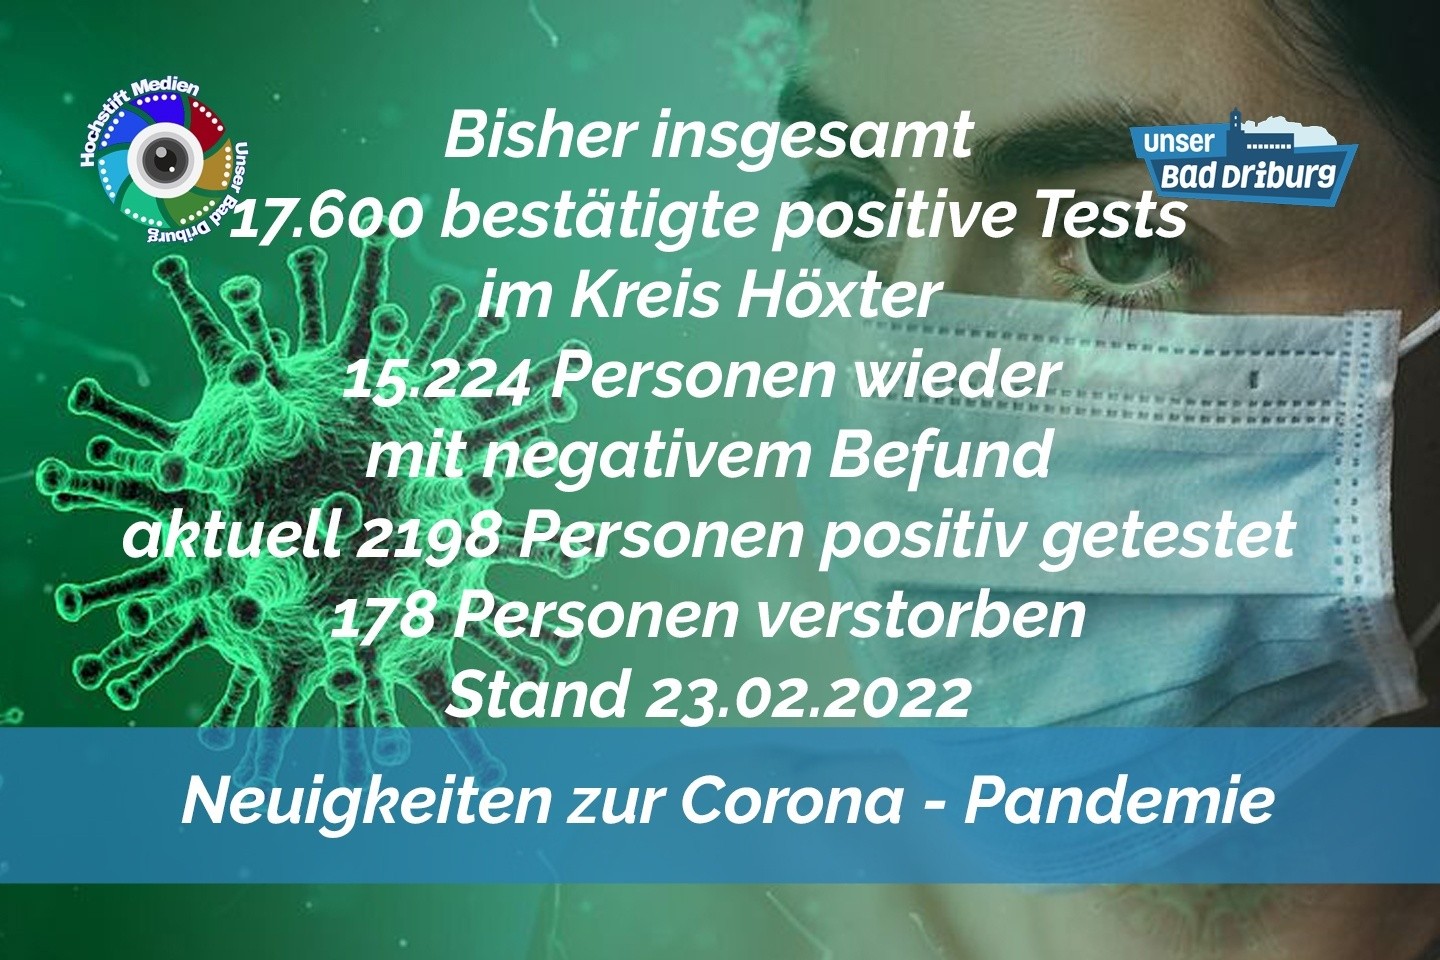 Update 23. Februar 2022: 364 weitere amtlich positive Tests im Kreis Höxter